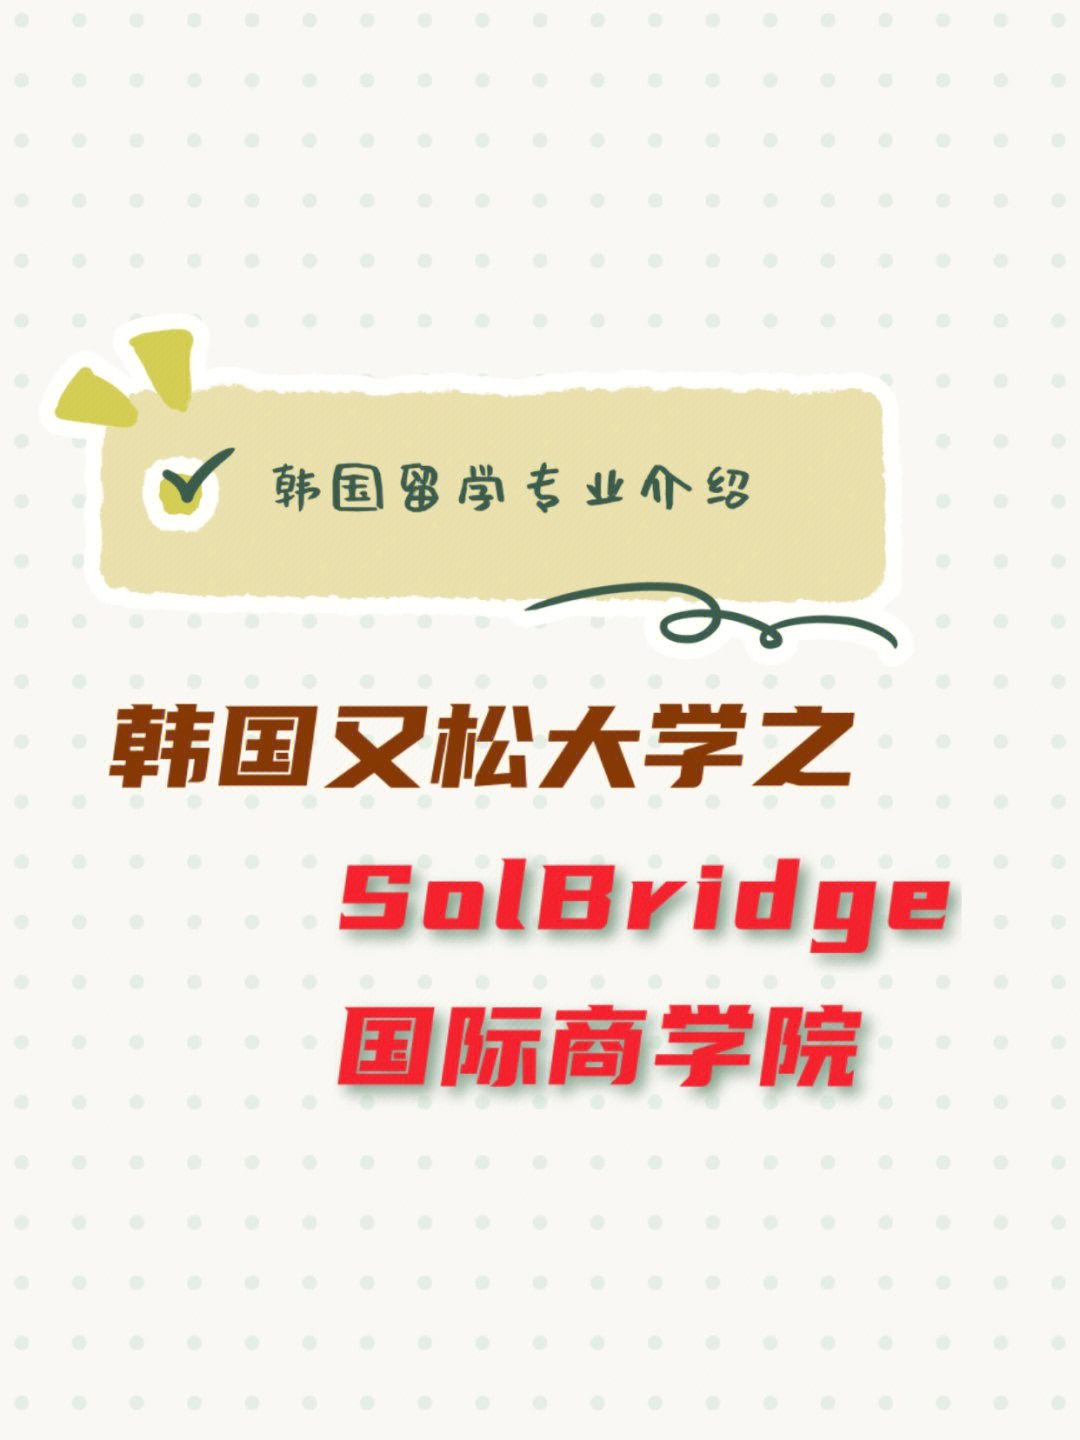 9693 韩国又松大学的solbridge国际商学院是又松大学重金打造的